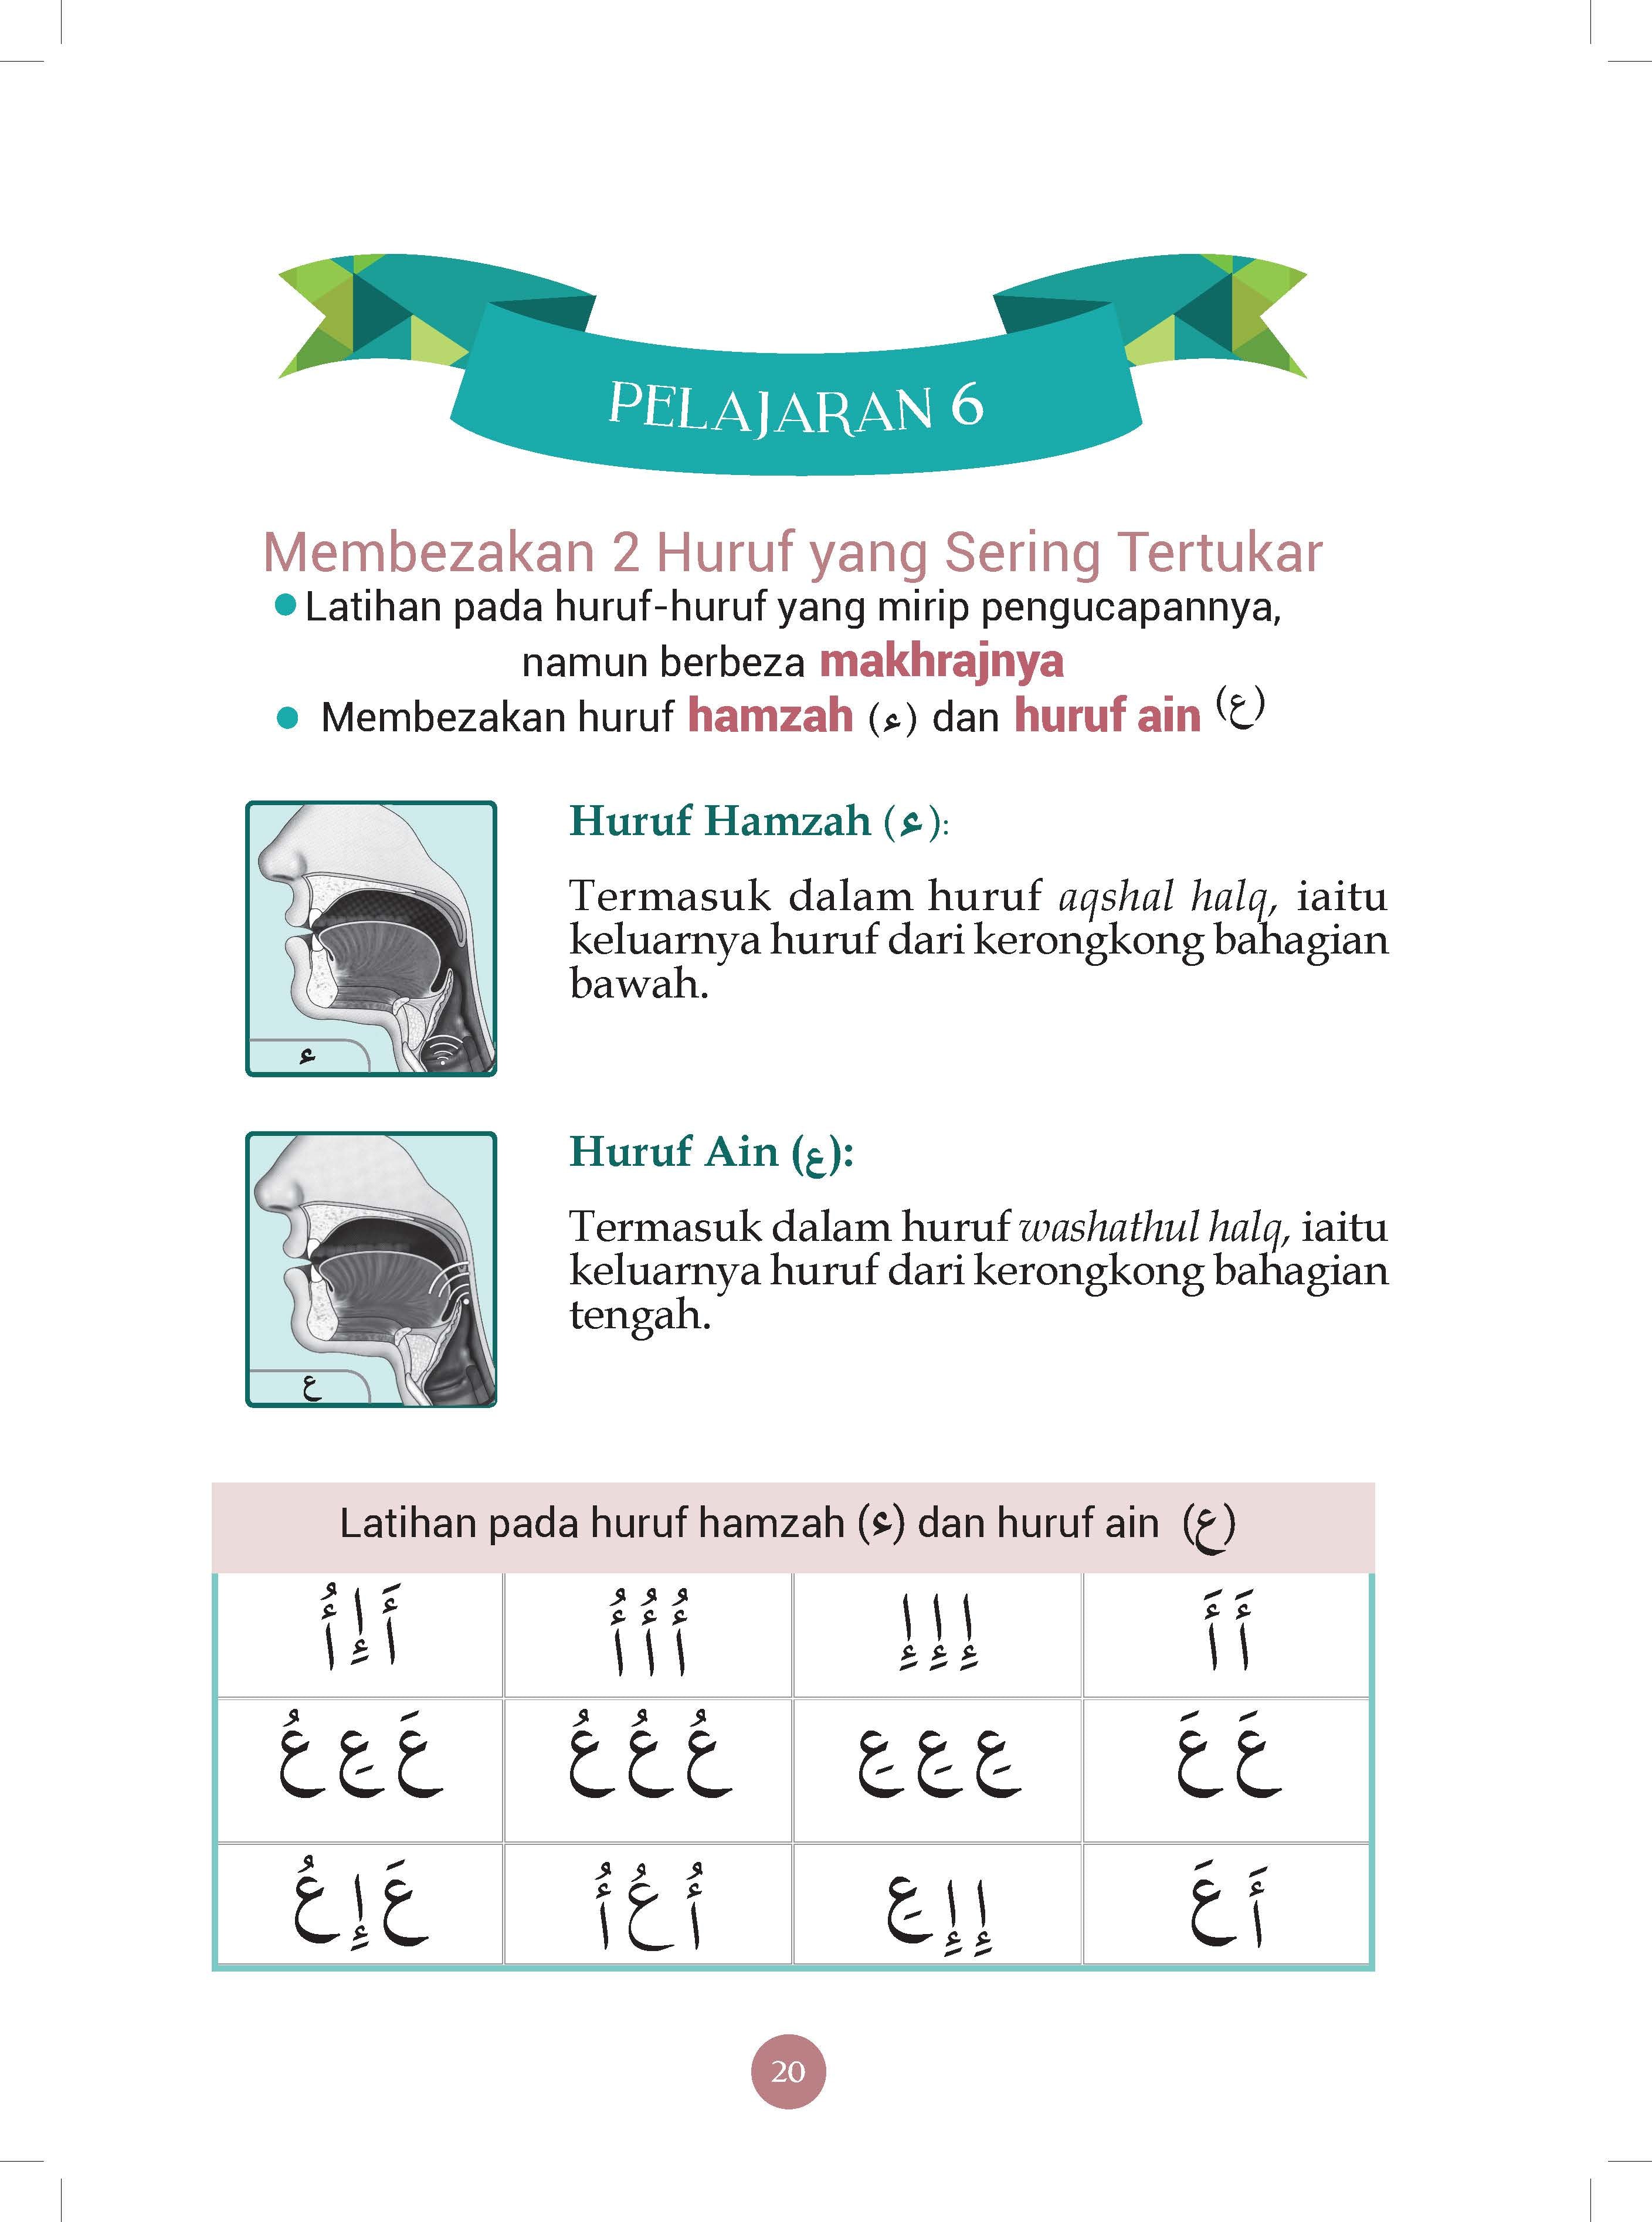 Kaedah Asy Syafi’i -  Cara Praktis Membaca Al-Quran - (TBBK1543)